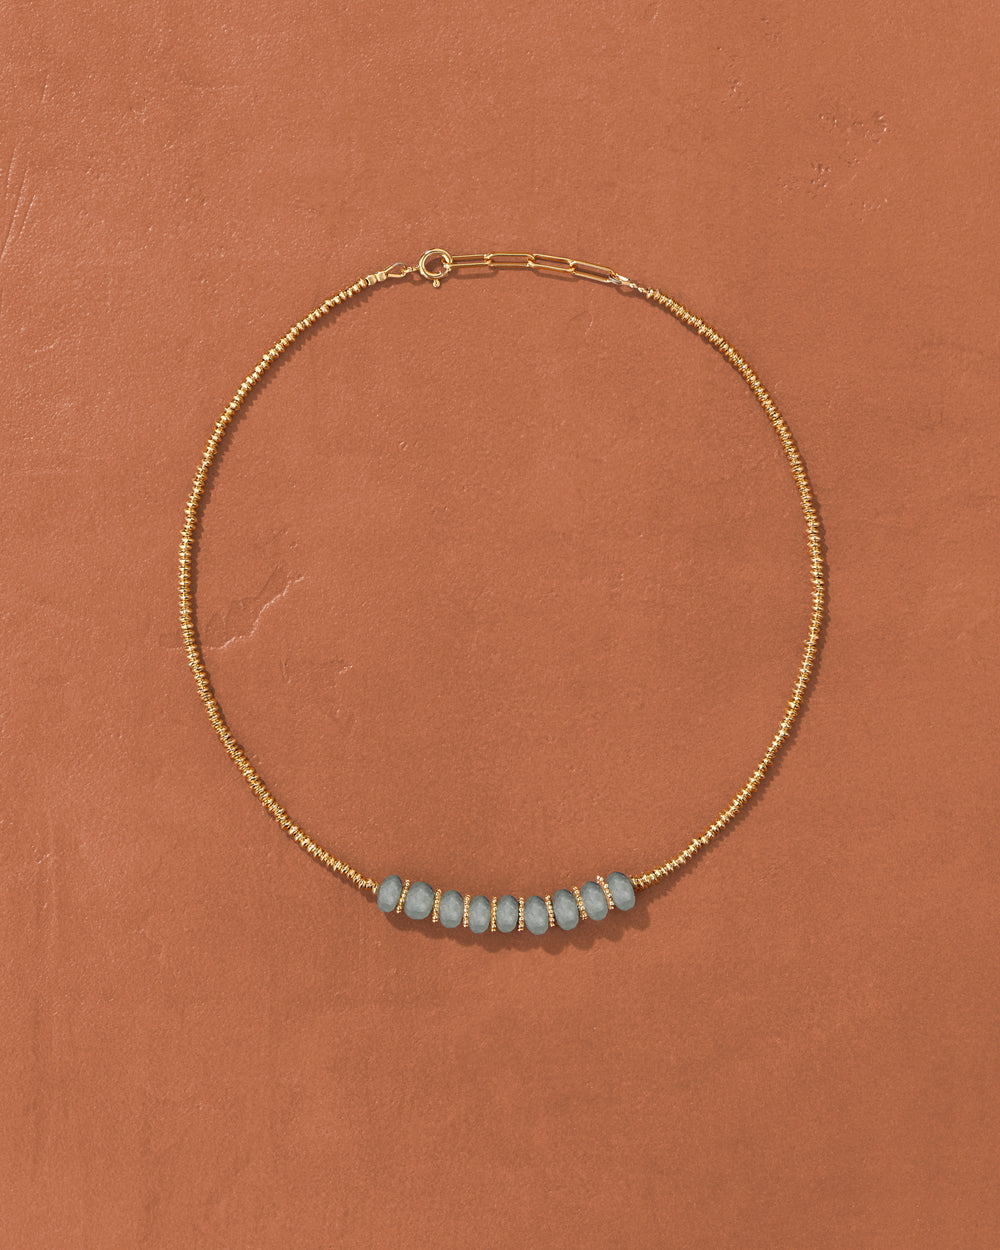 Mandala necklace